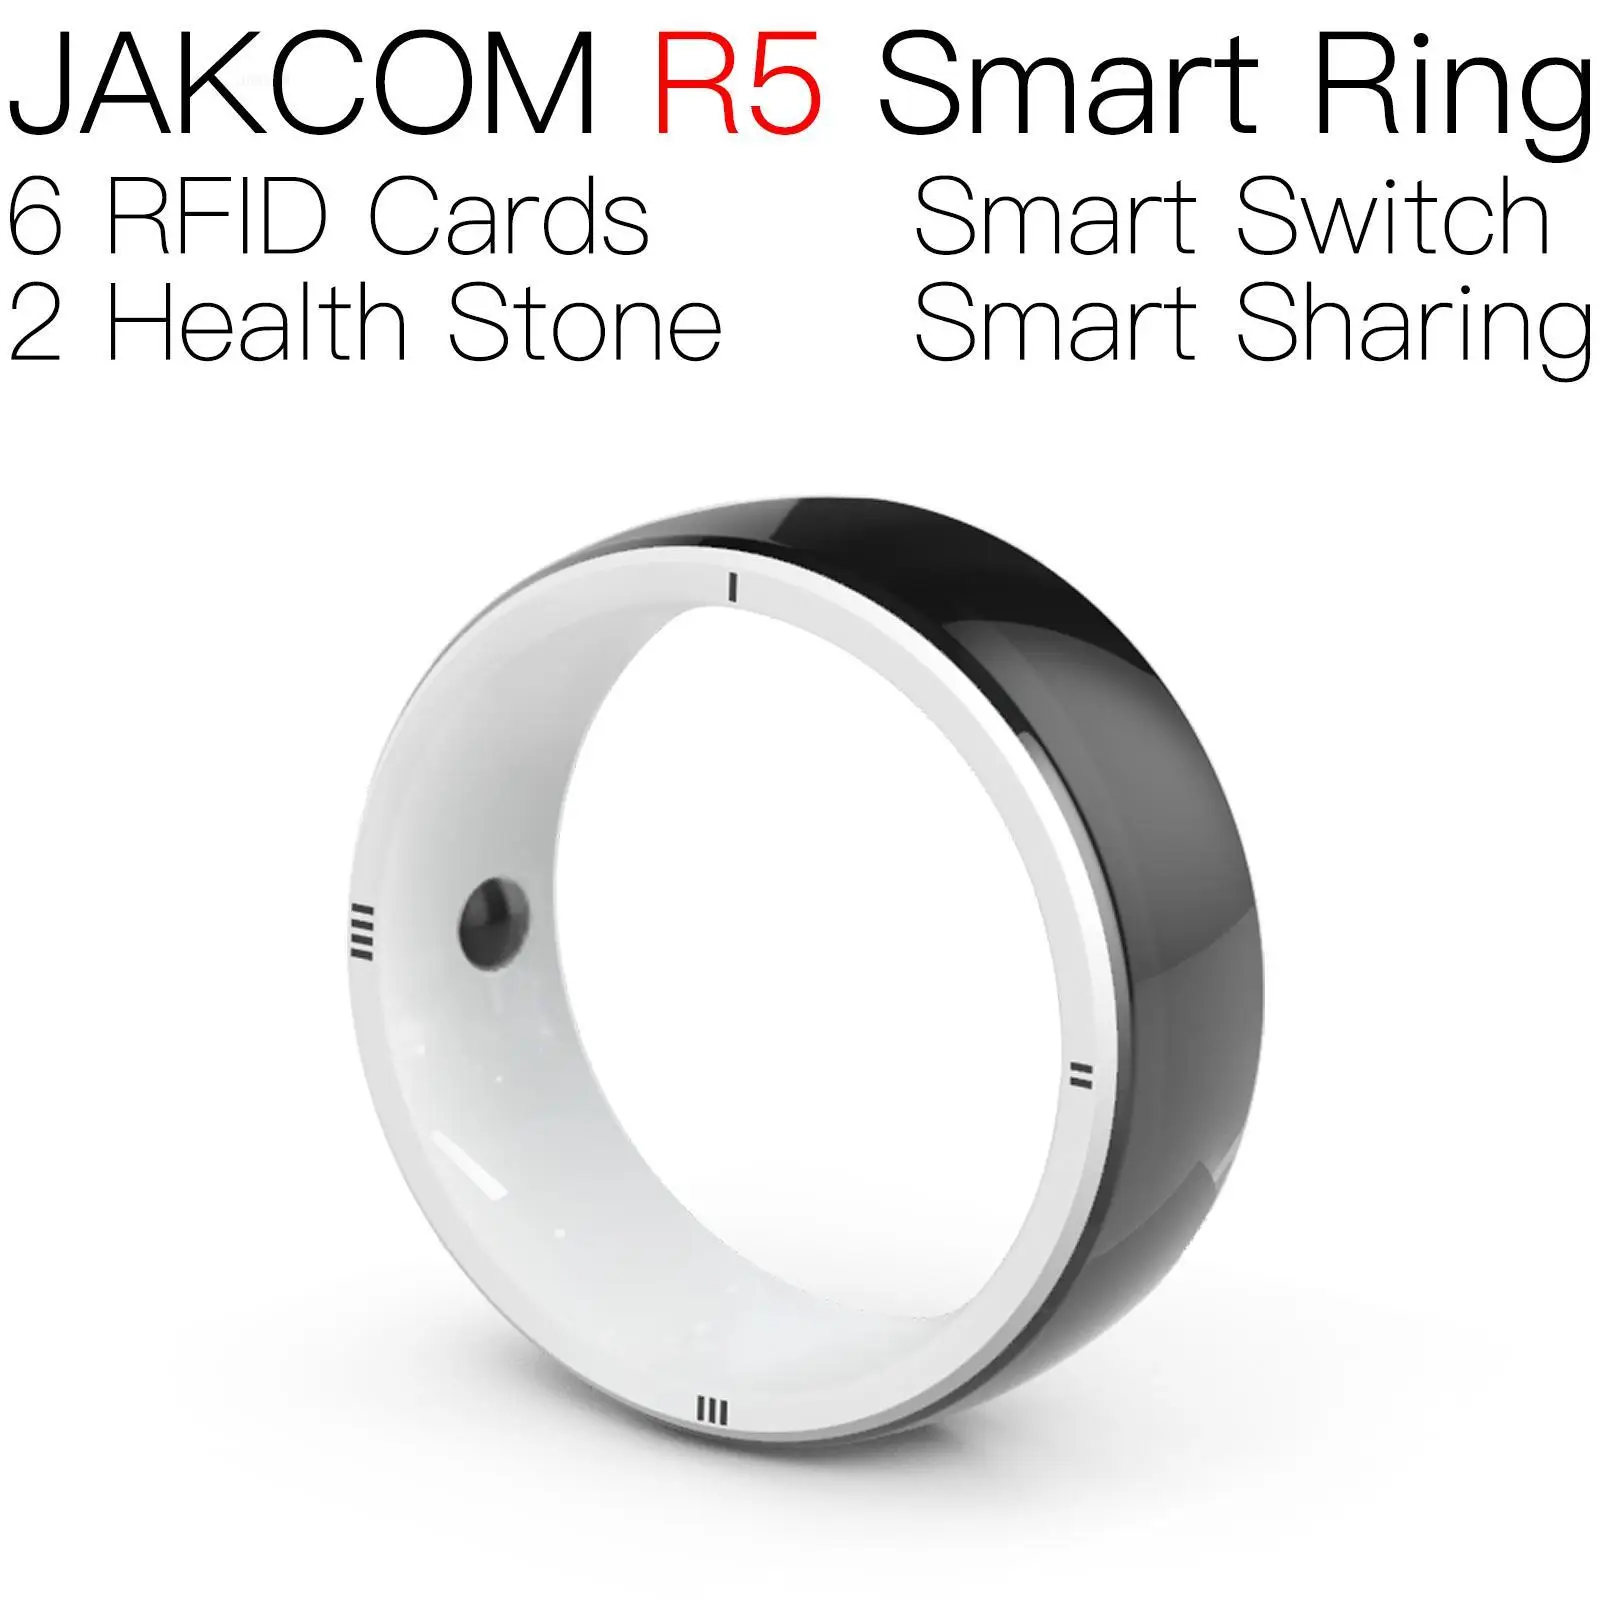 Смарт-кольцо JAKCOM R5 обладает высокой ценностью в качестве rfid-браслета, дубликатора, электронного замка для ключей, ленточных меток, программируемой карты